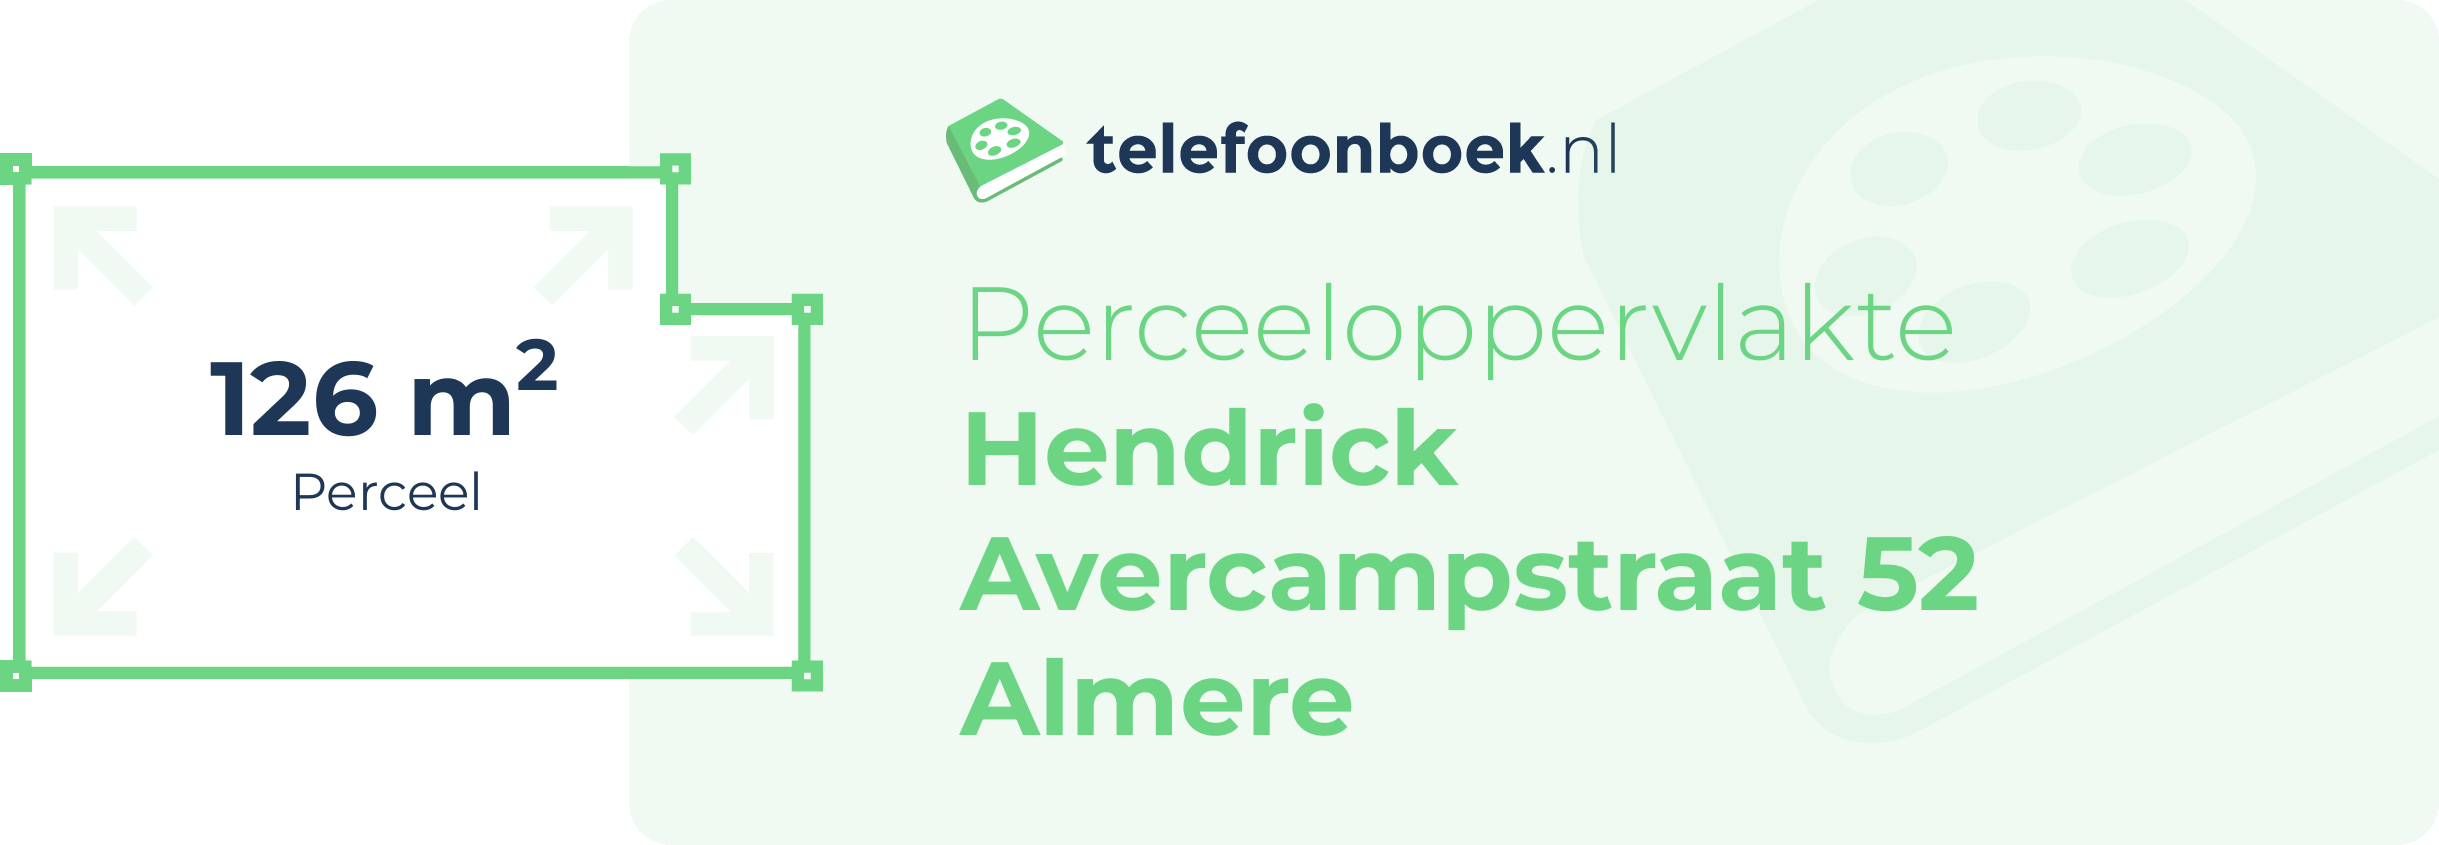 Perceeloppervlakte Hendrick Avercampstraat 52 Almere